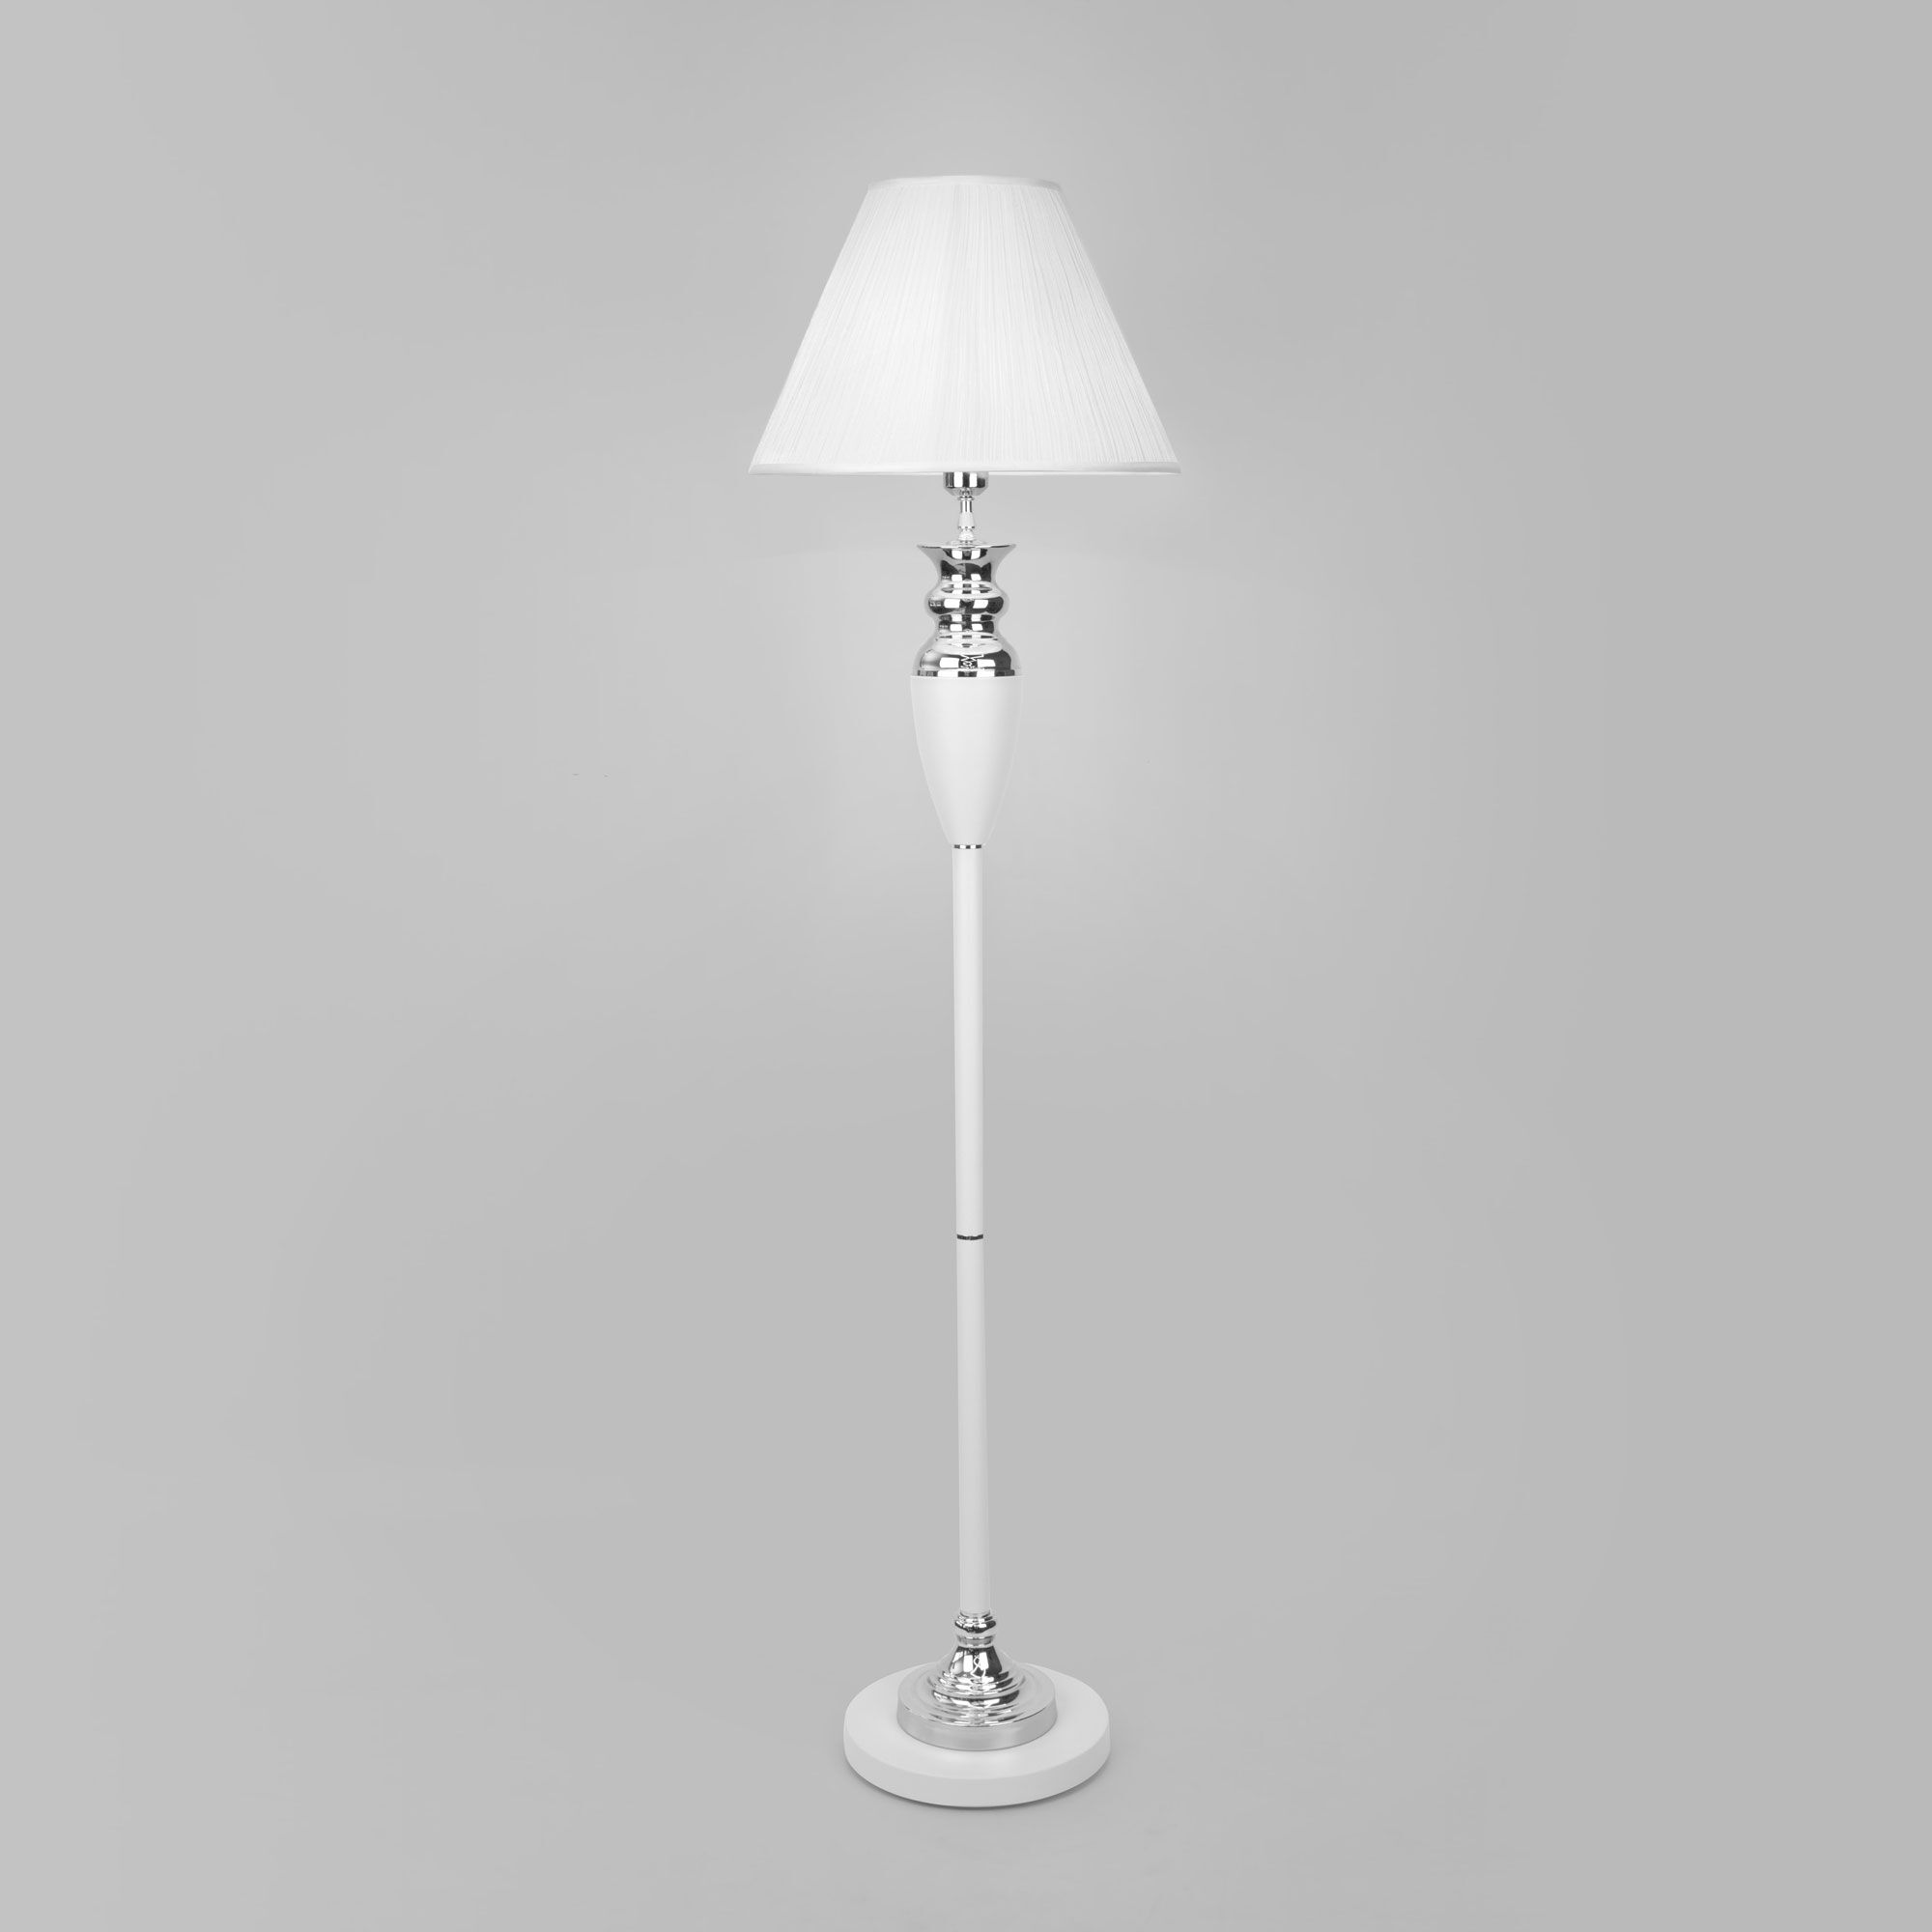 Напольный светильник с тканевым абажуром Eurosvet Majorka 009 белый. Фото 1